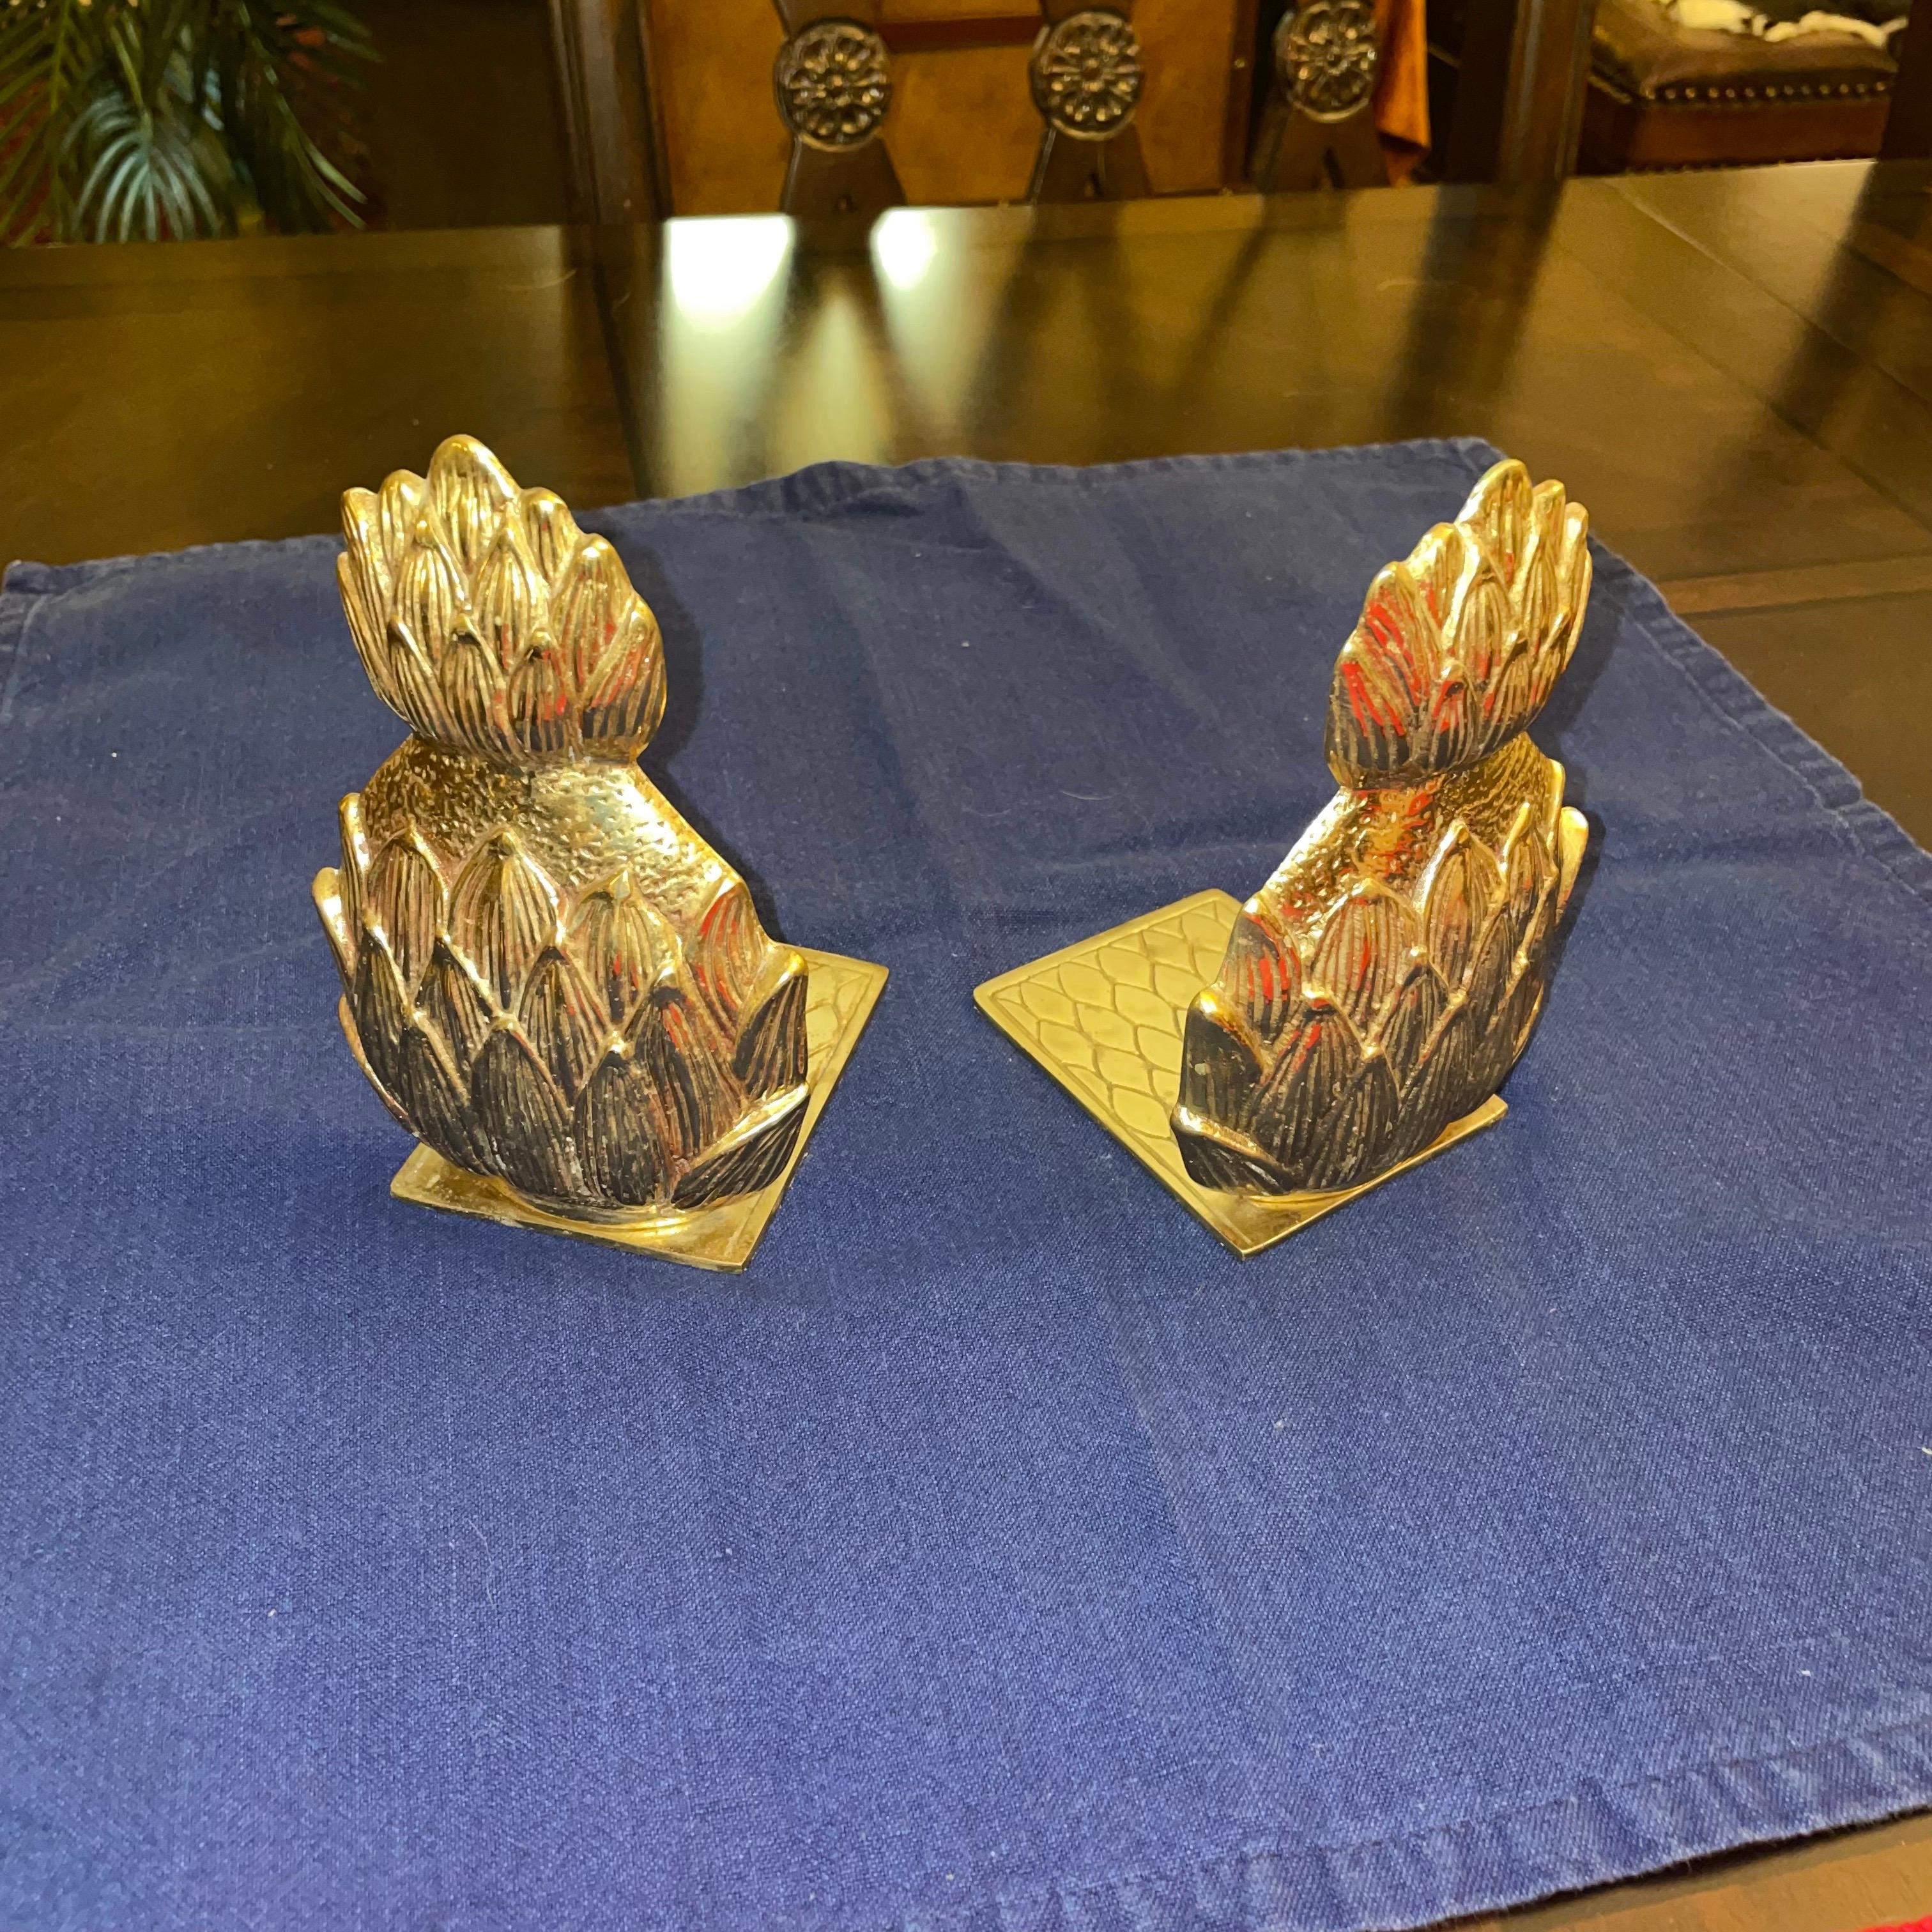 Une paire de serre-livres en forme d'ananas en laiton en très bon état. Ils ont tous deux un fond en feutre afin de ne pas rayer la surface sur laquelle ils se trouvent. Récemment polie.